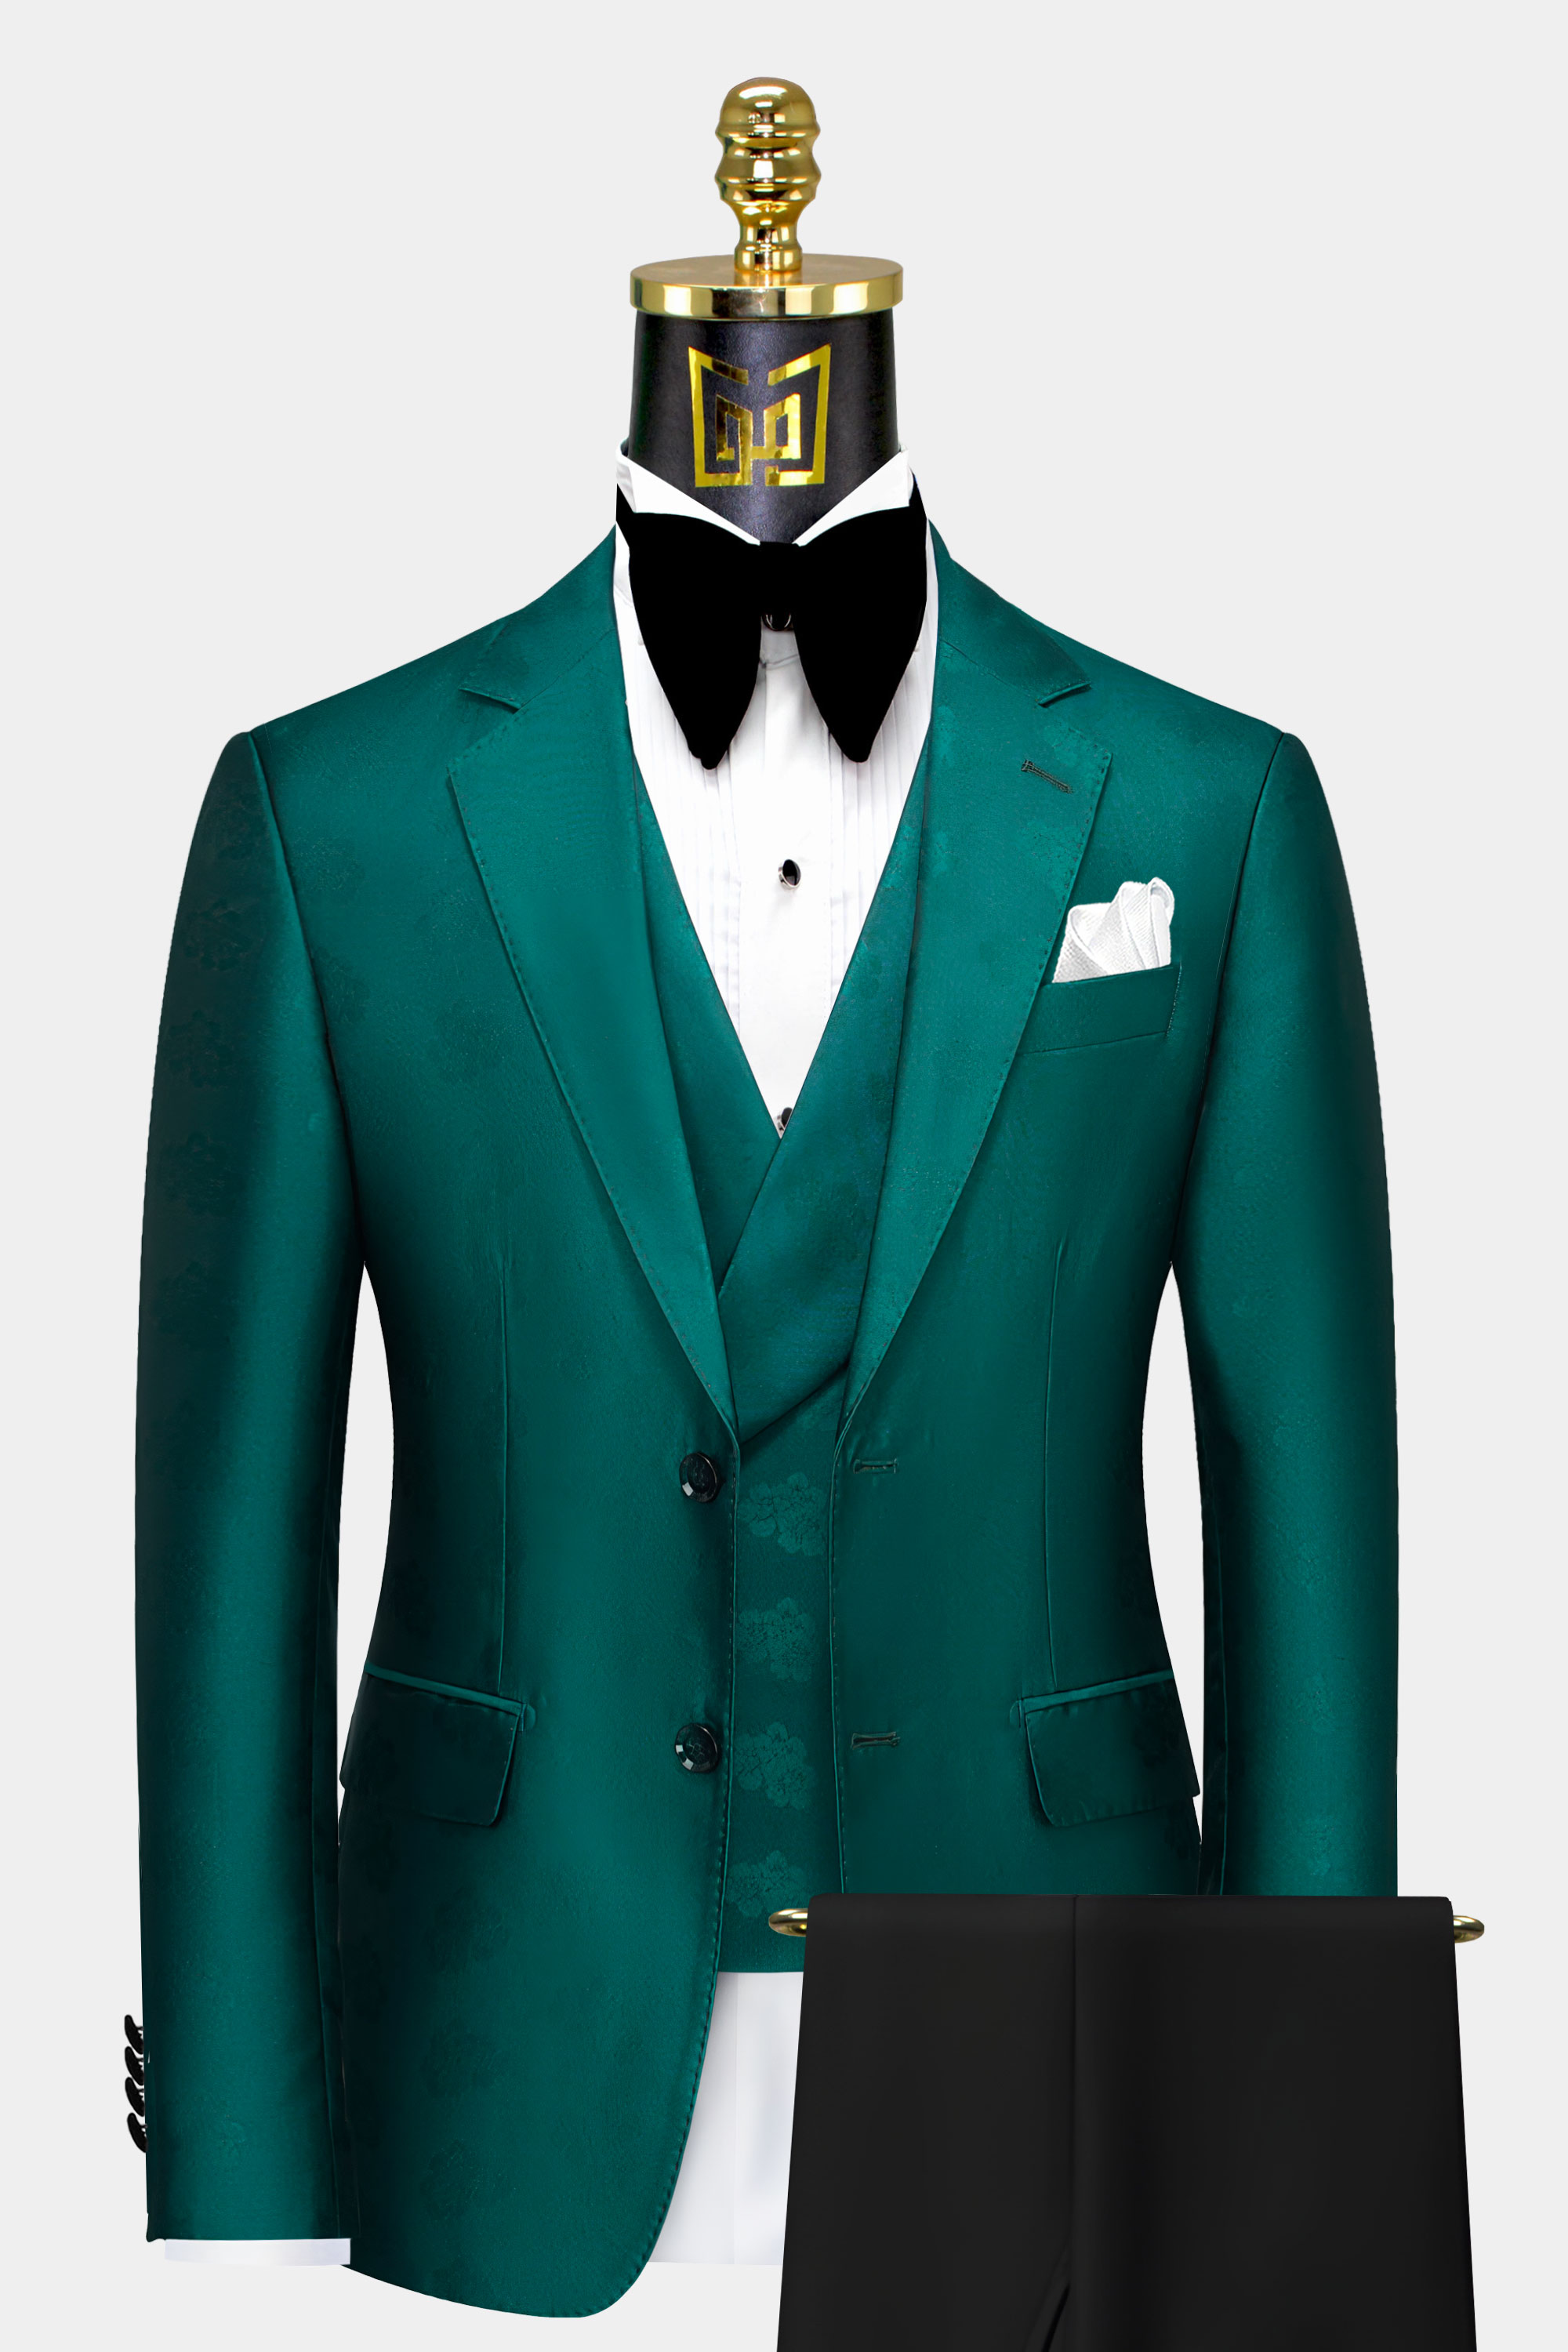 Teal Green Suit - 3 Piece | Gentleman's Guru